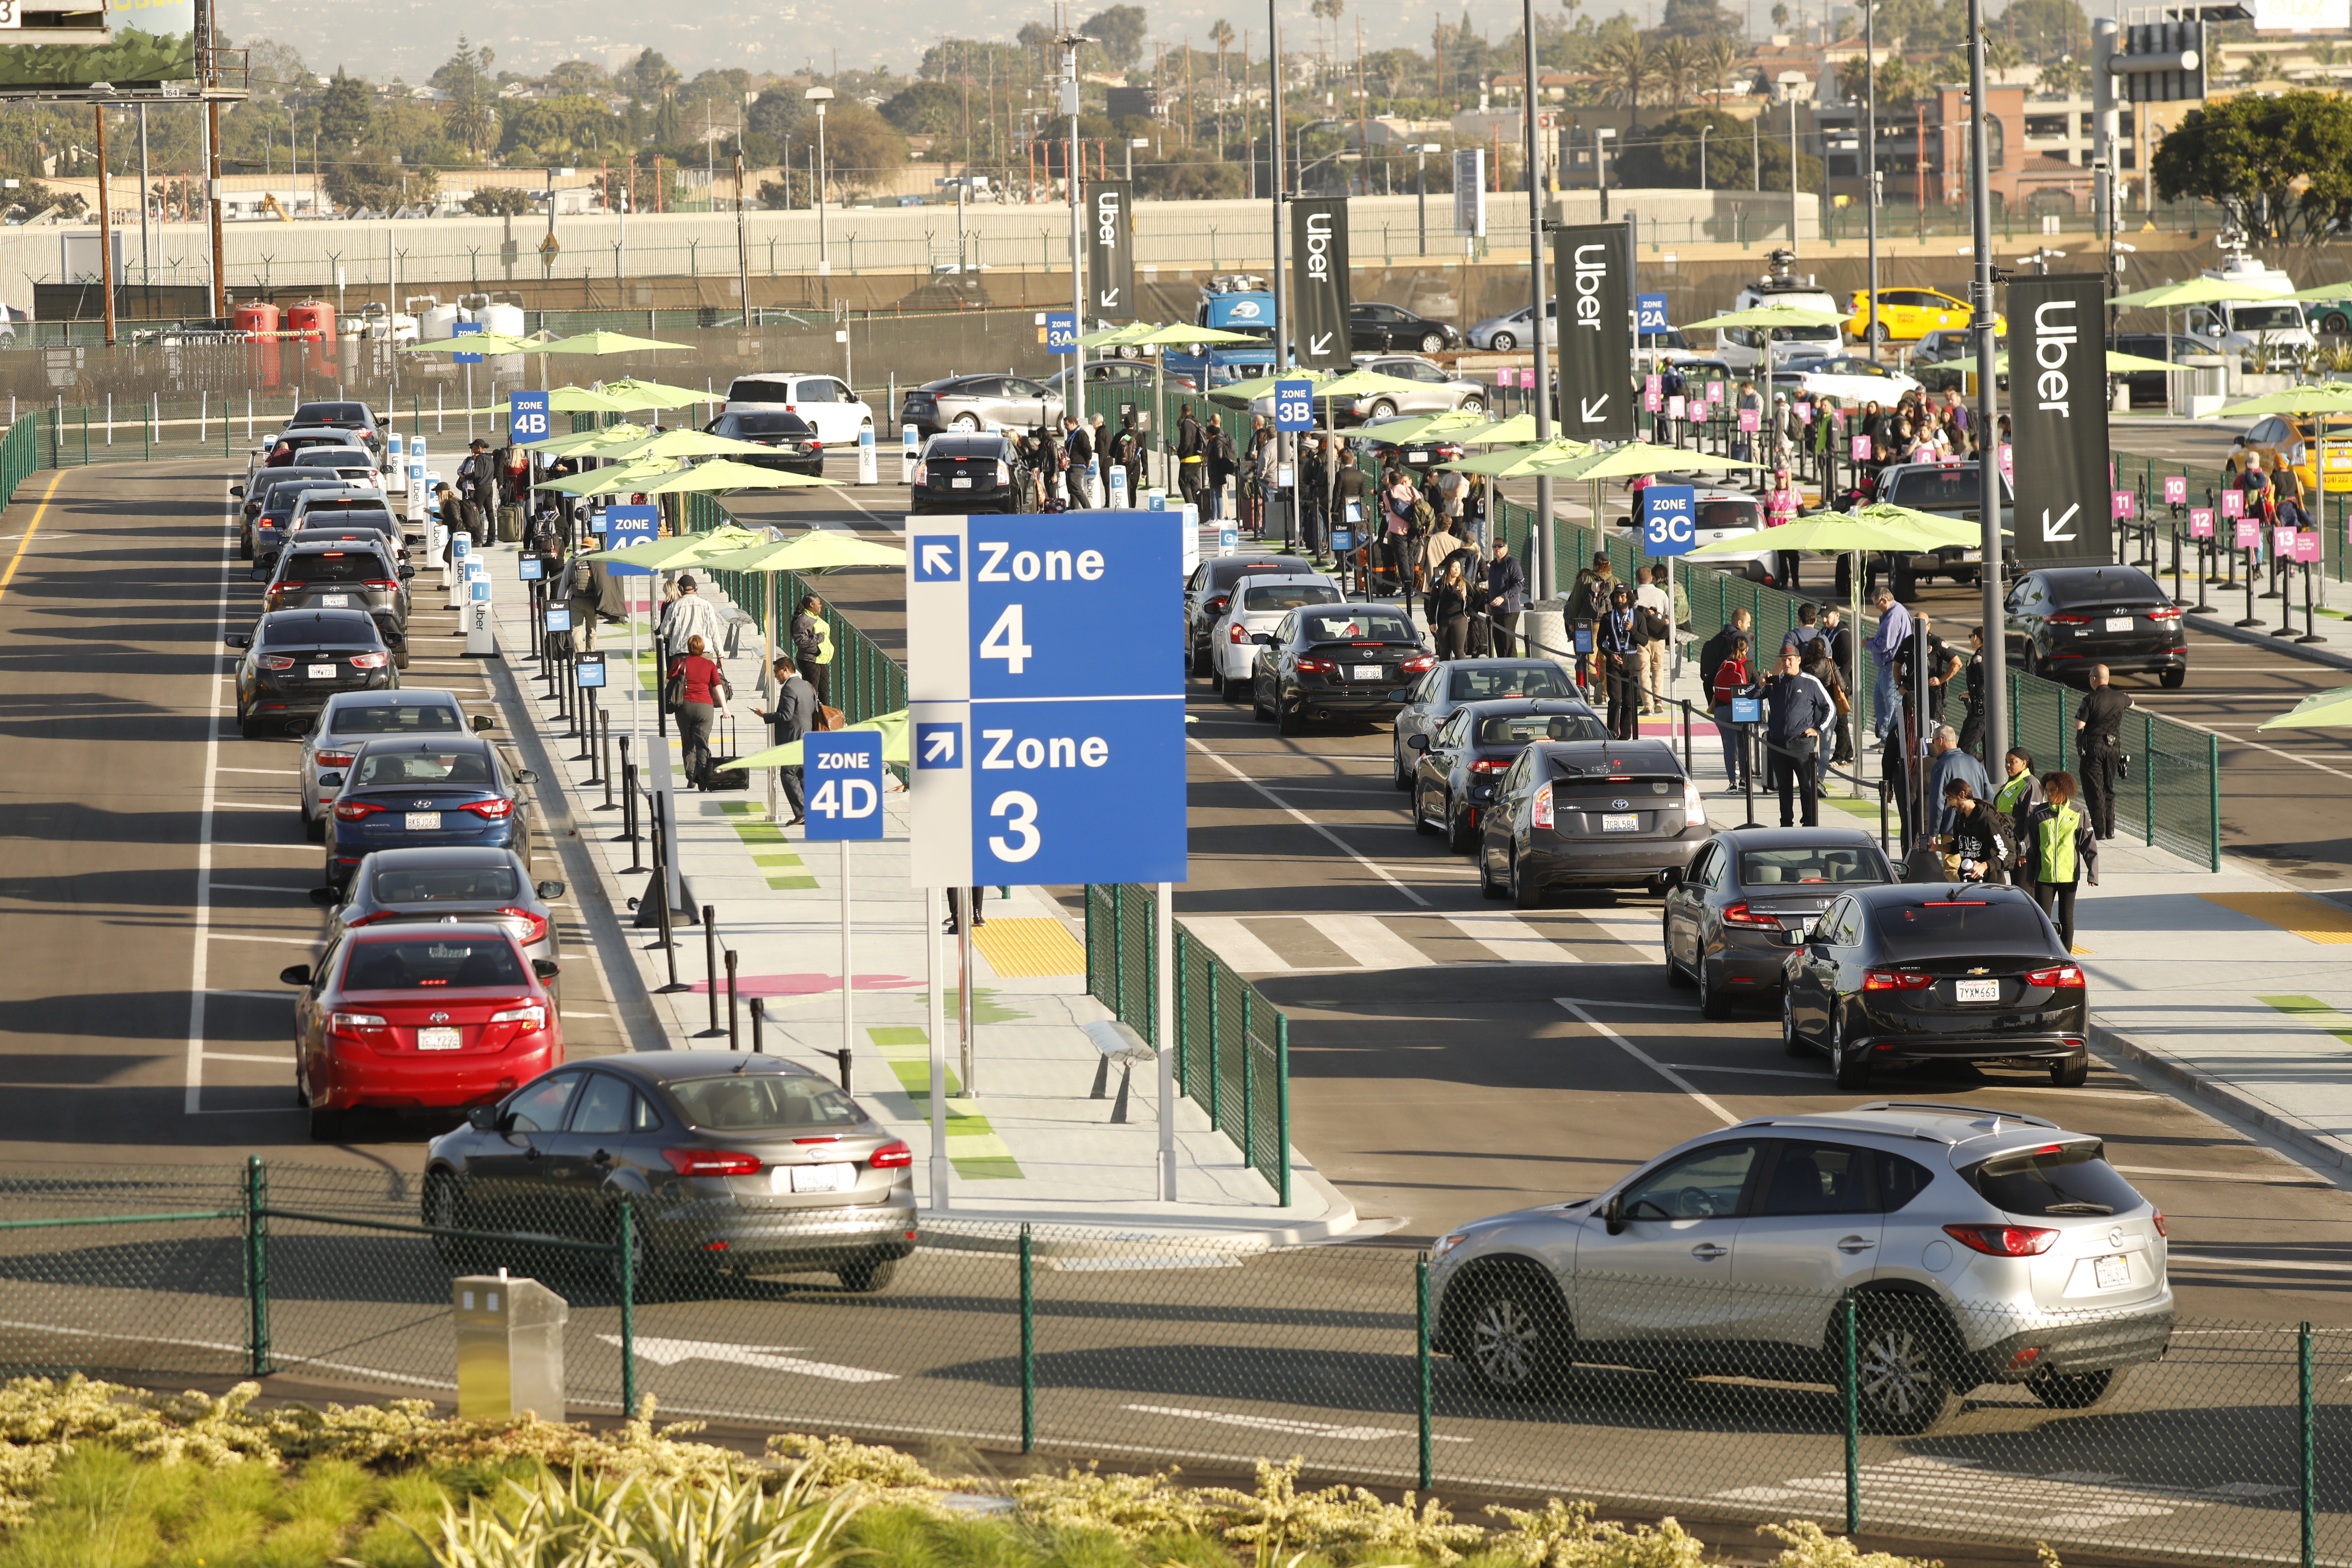 在机场的停车场，一排排的汽车排着队，拿着行李的人们排着长队去取行李。背景中可以看到优步的标志。